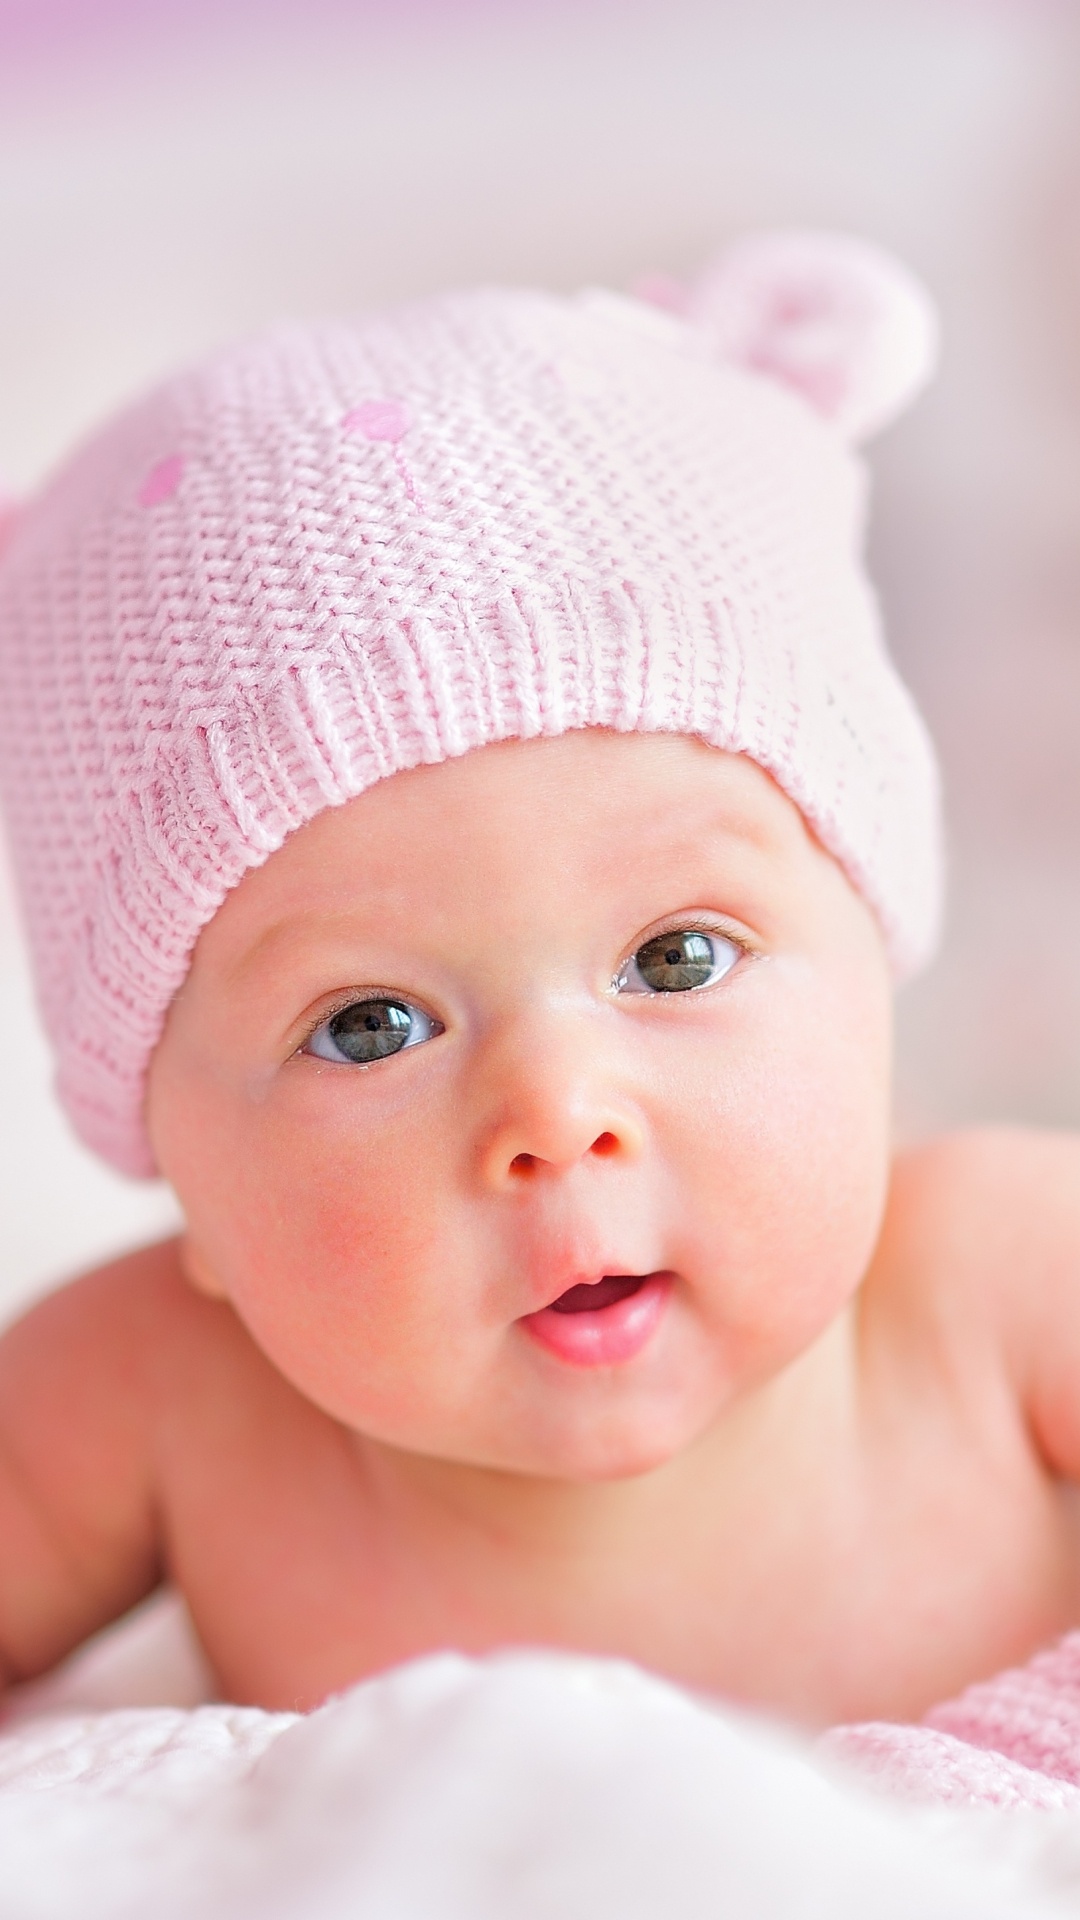 婴儿, 儿童, 粉红色, 皮肤, 女孩 壁纸 1080x1920 允许